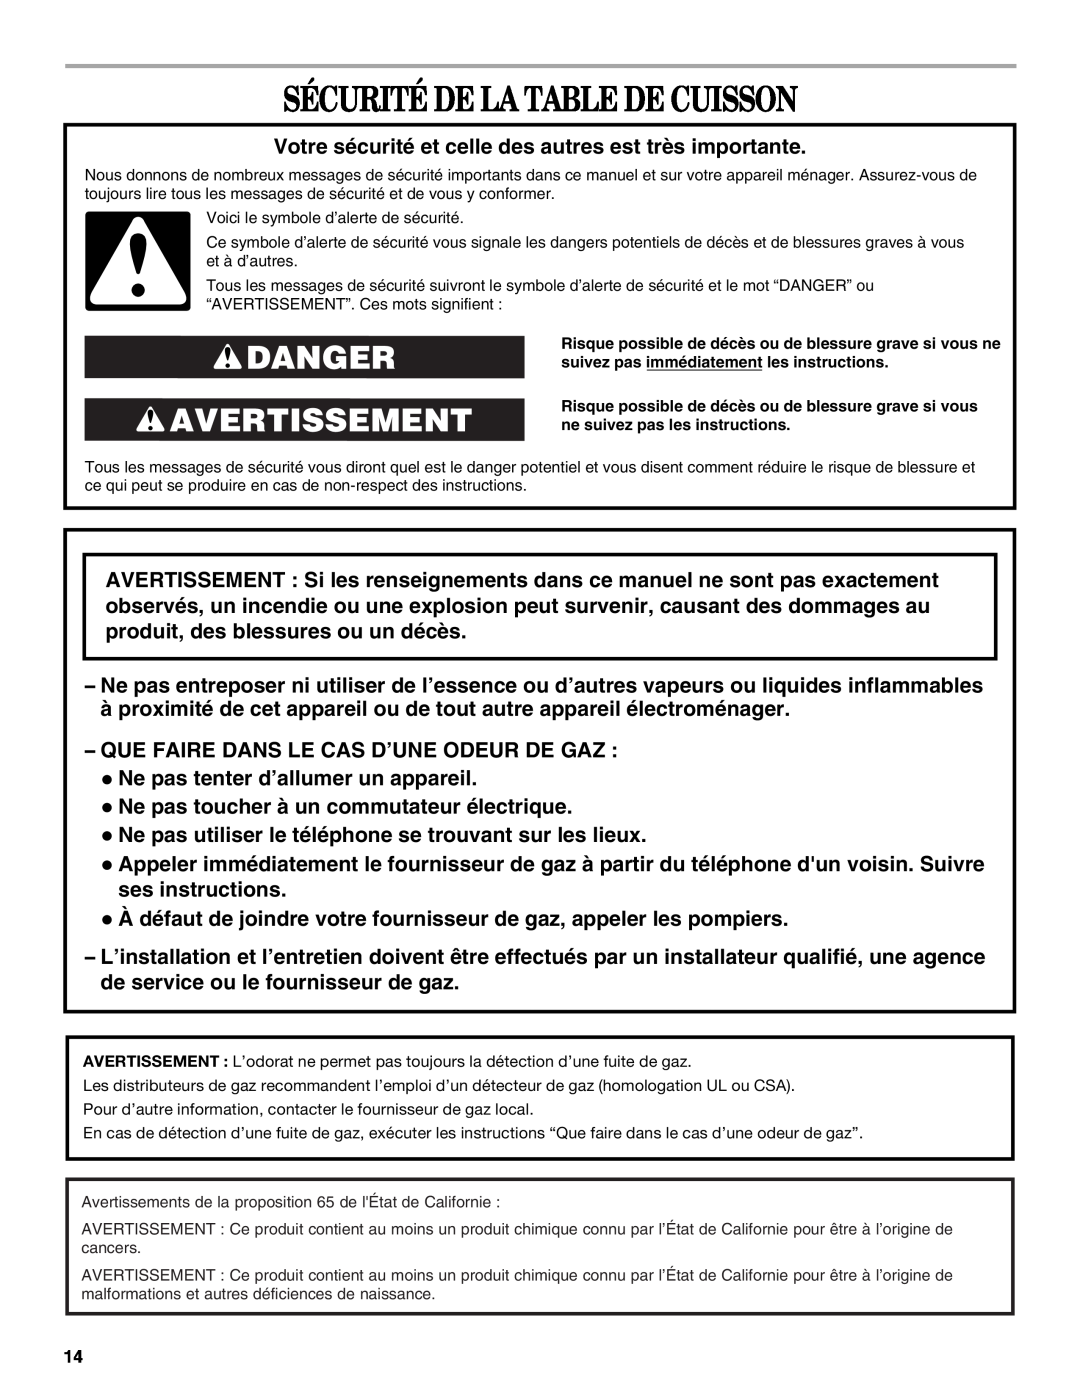 Whirlpool G7CG3665XS manual Sécurité De La Table De Cuisson, Danger Avertissement 